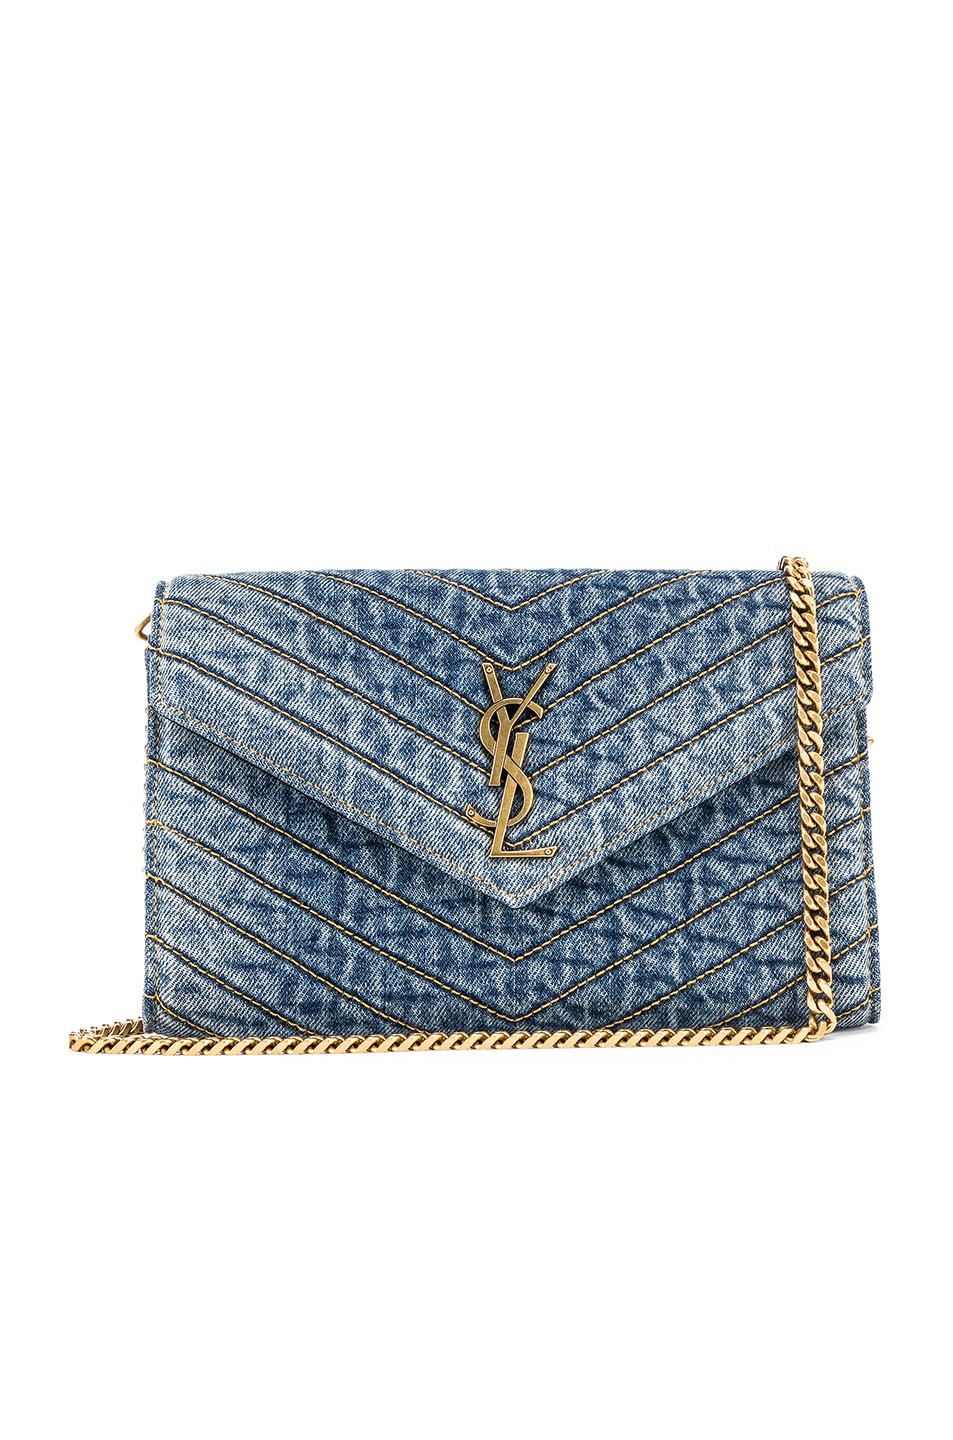 Saint Laurent Monogram Ysl Medium Denim Wallet On Chain in Blue | Lyst